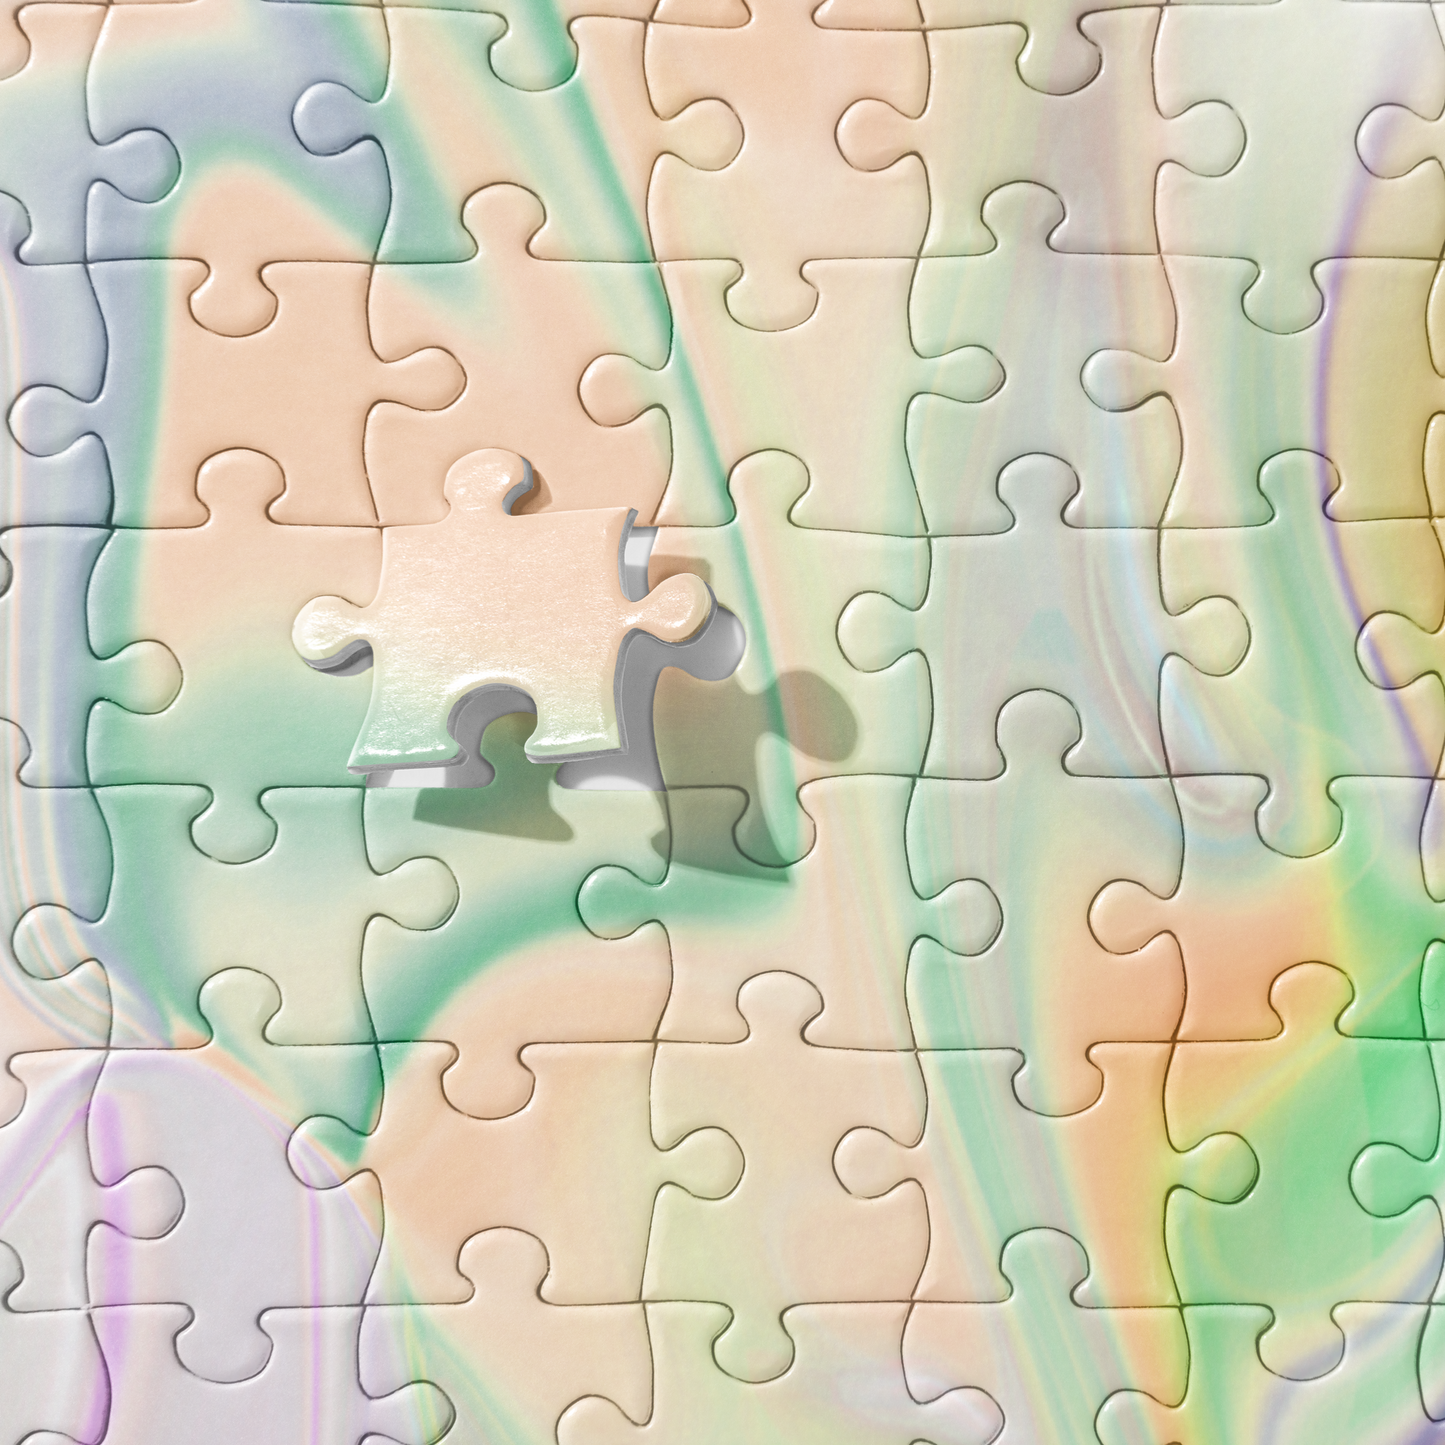 Go Dancing Abstract Art BeSculpt Jigsaw Puzzle 252/520